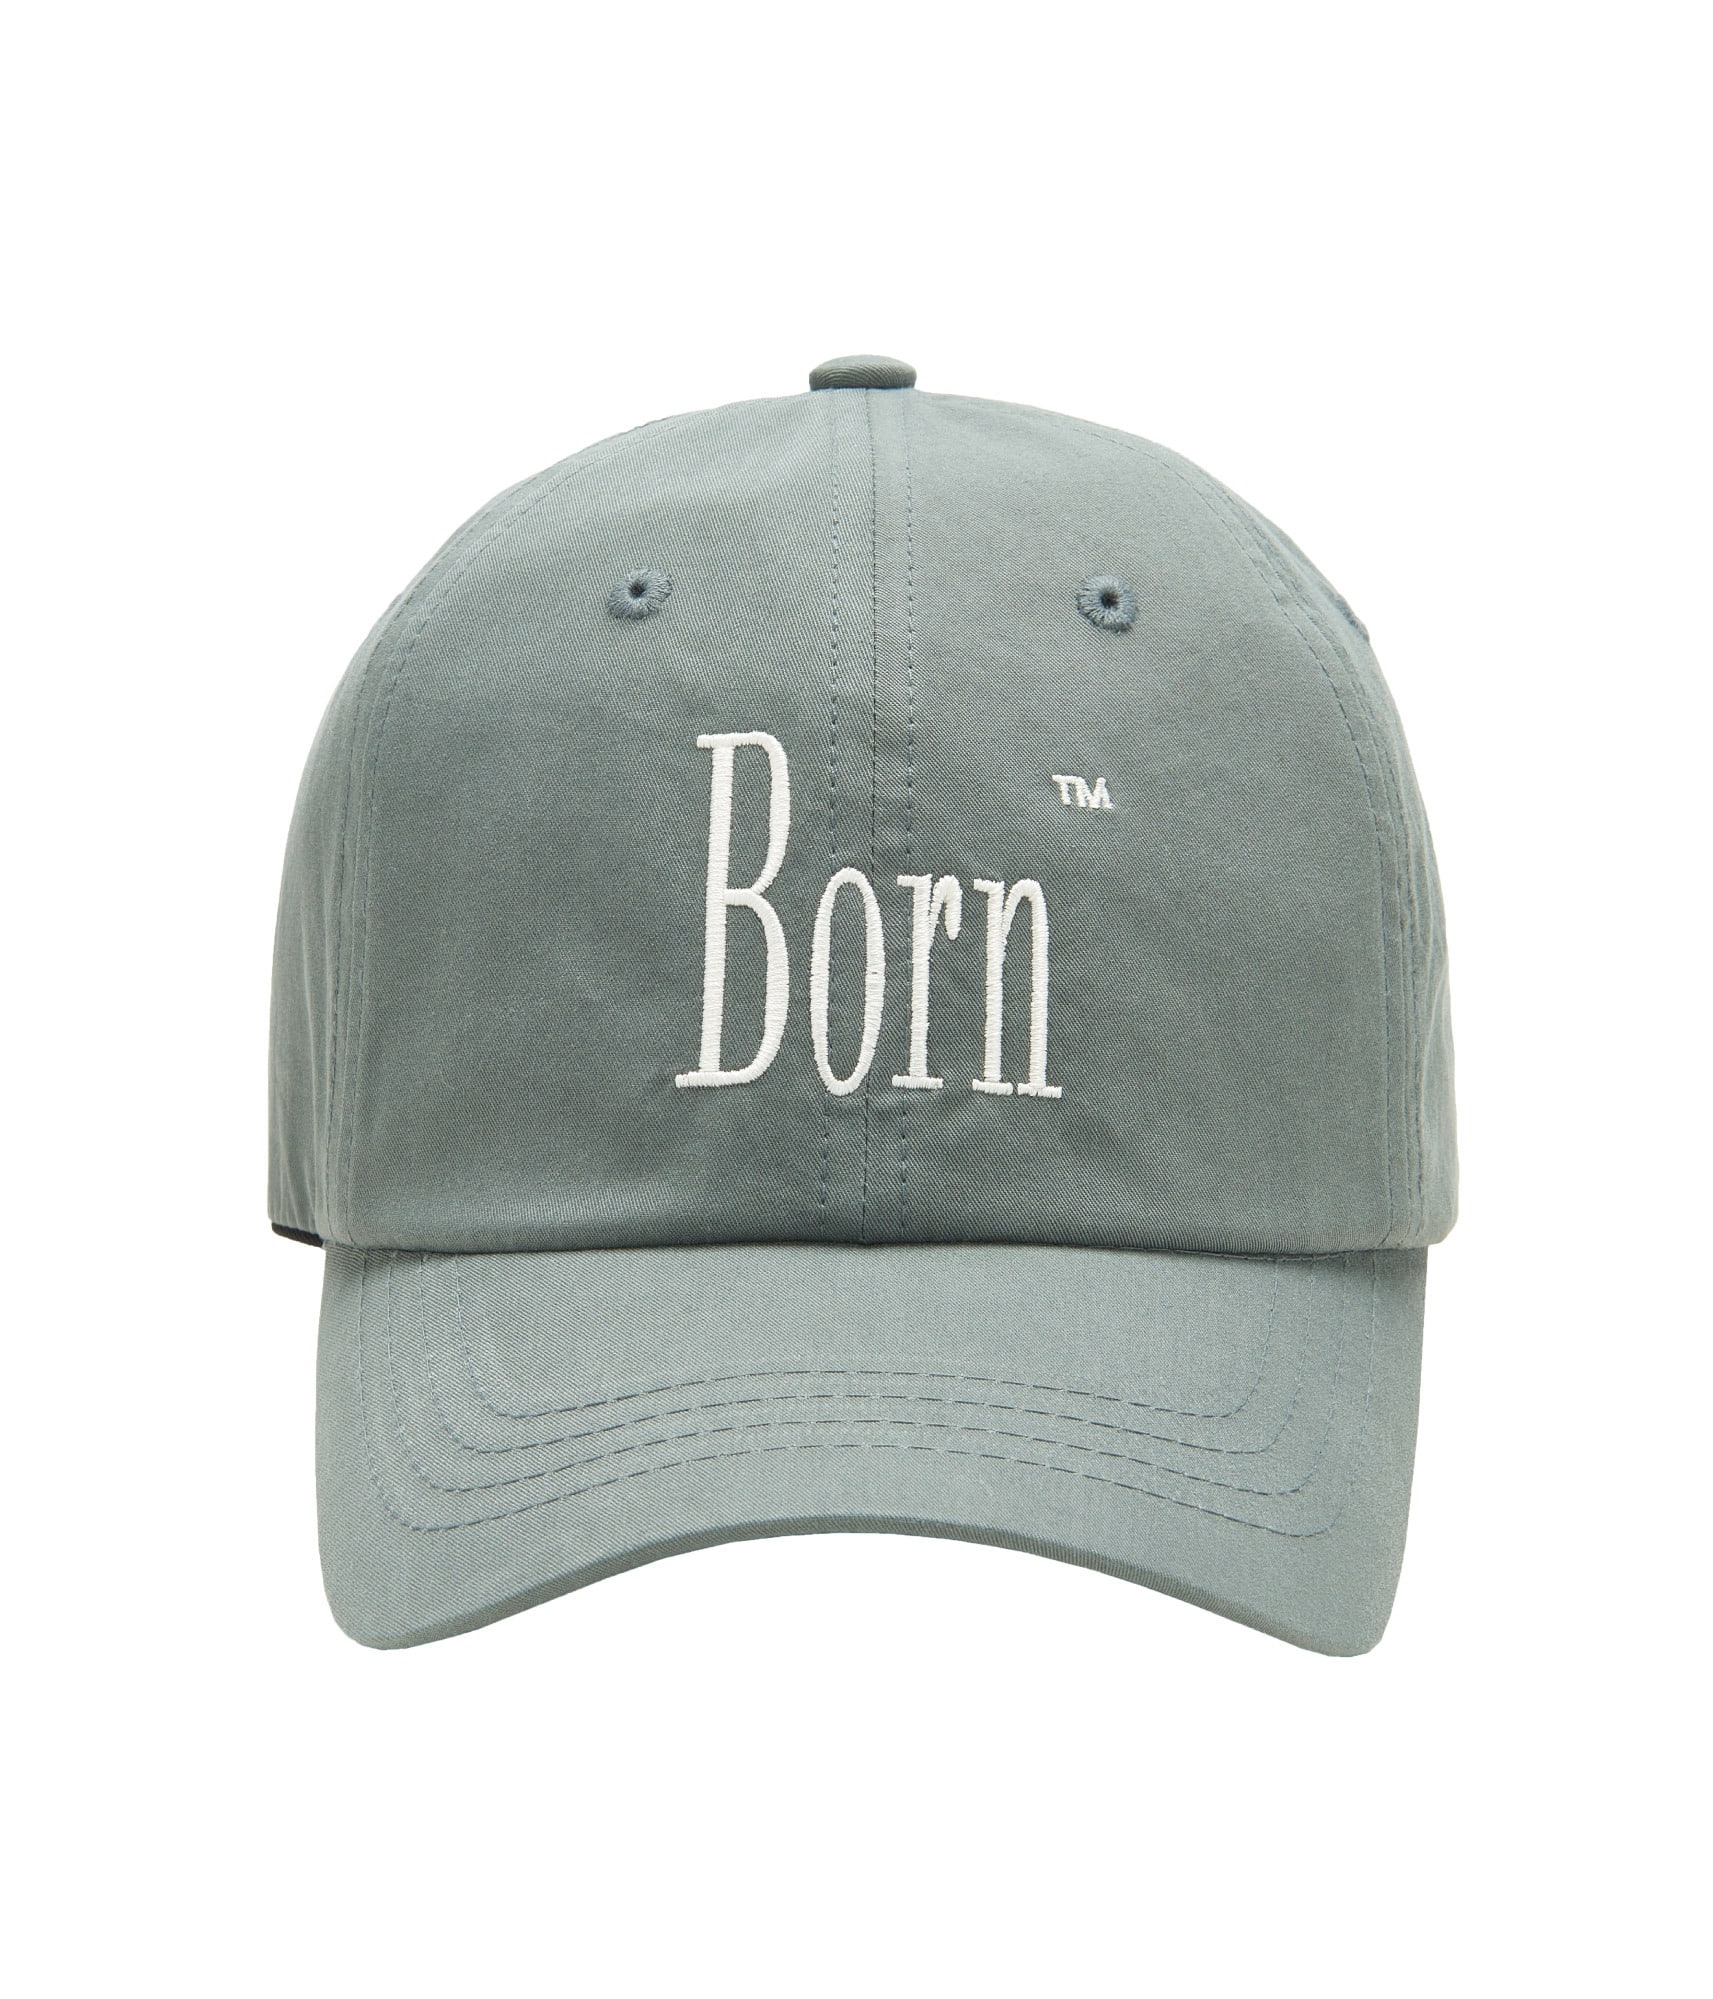 BORN BASEBALL CAP (KHAKI)